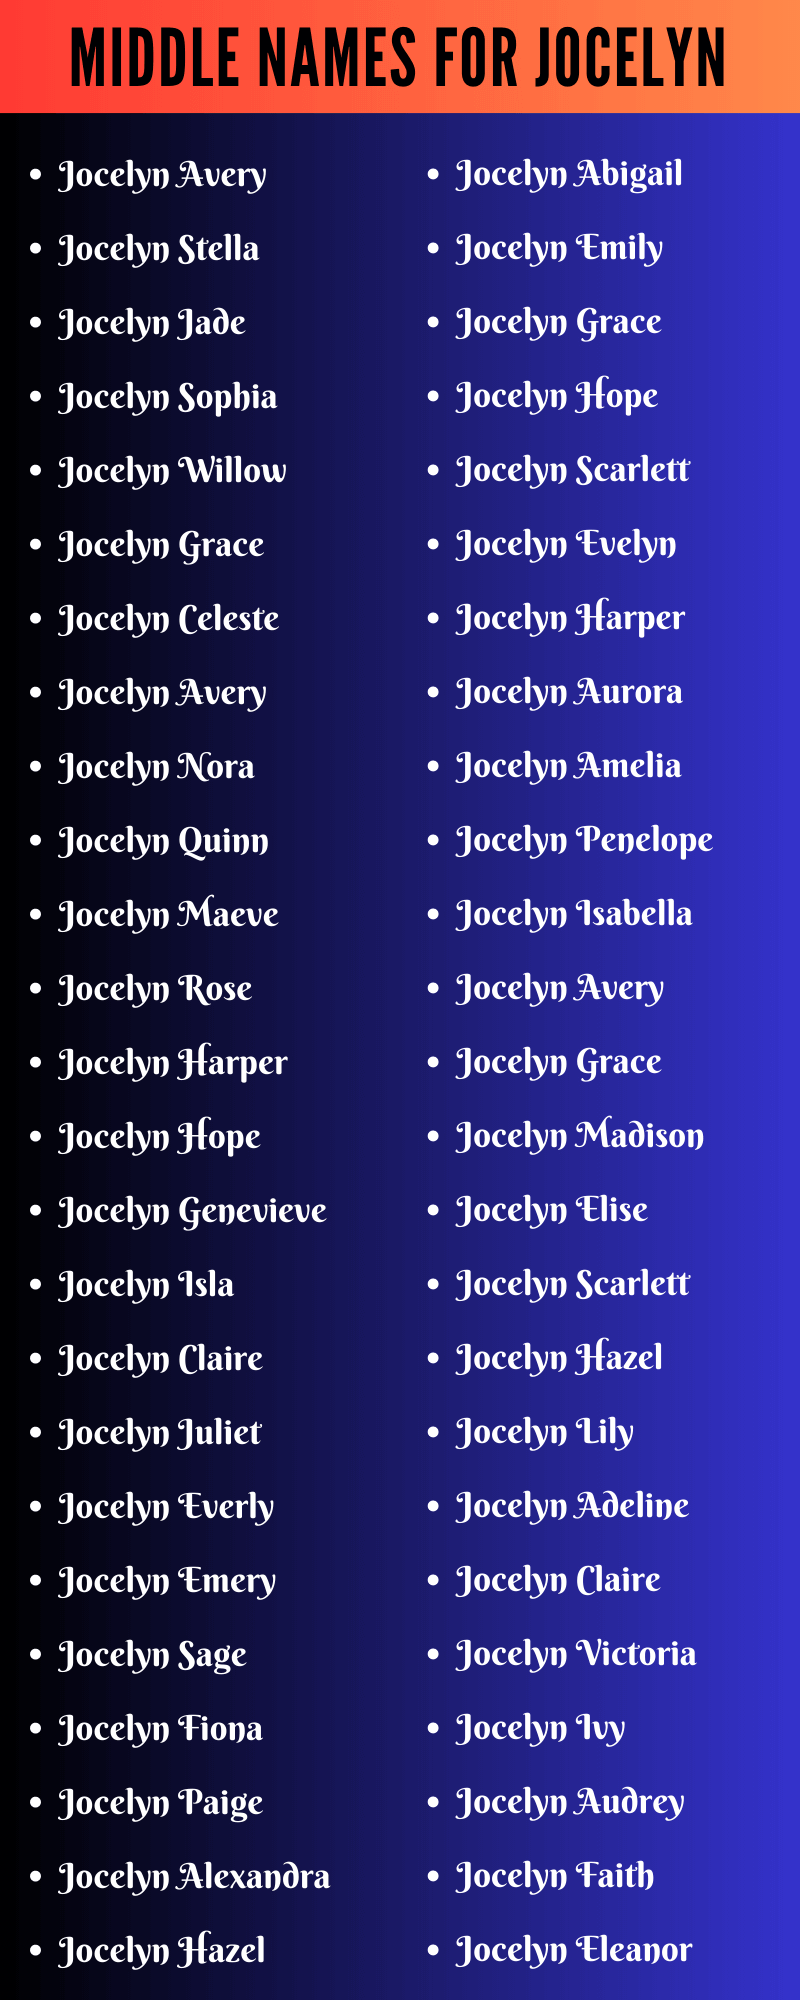 Middle Names For Jocelyn